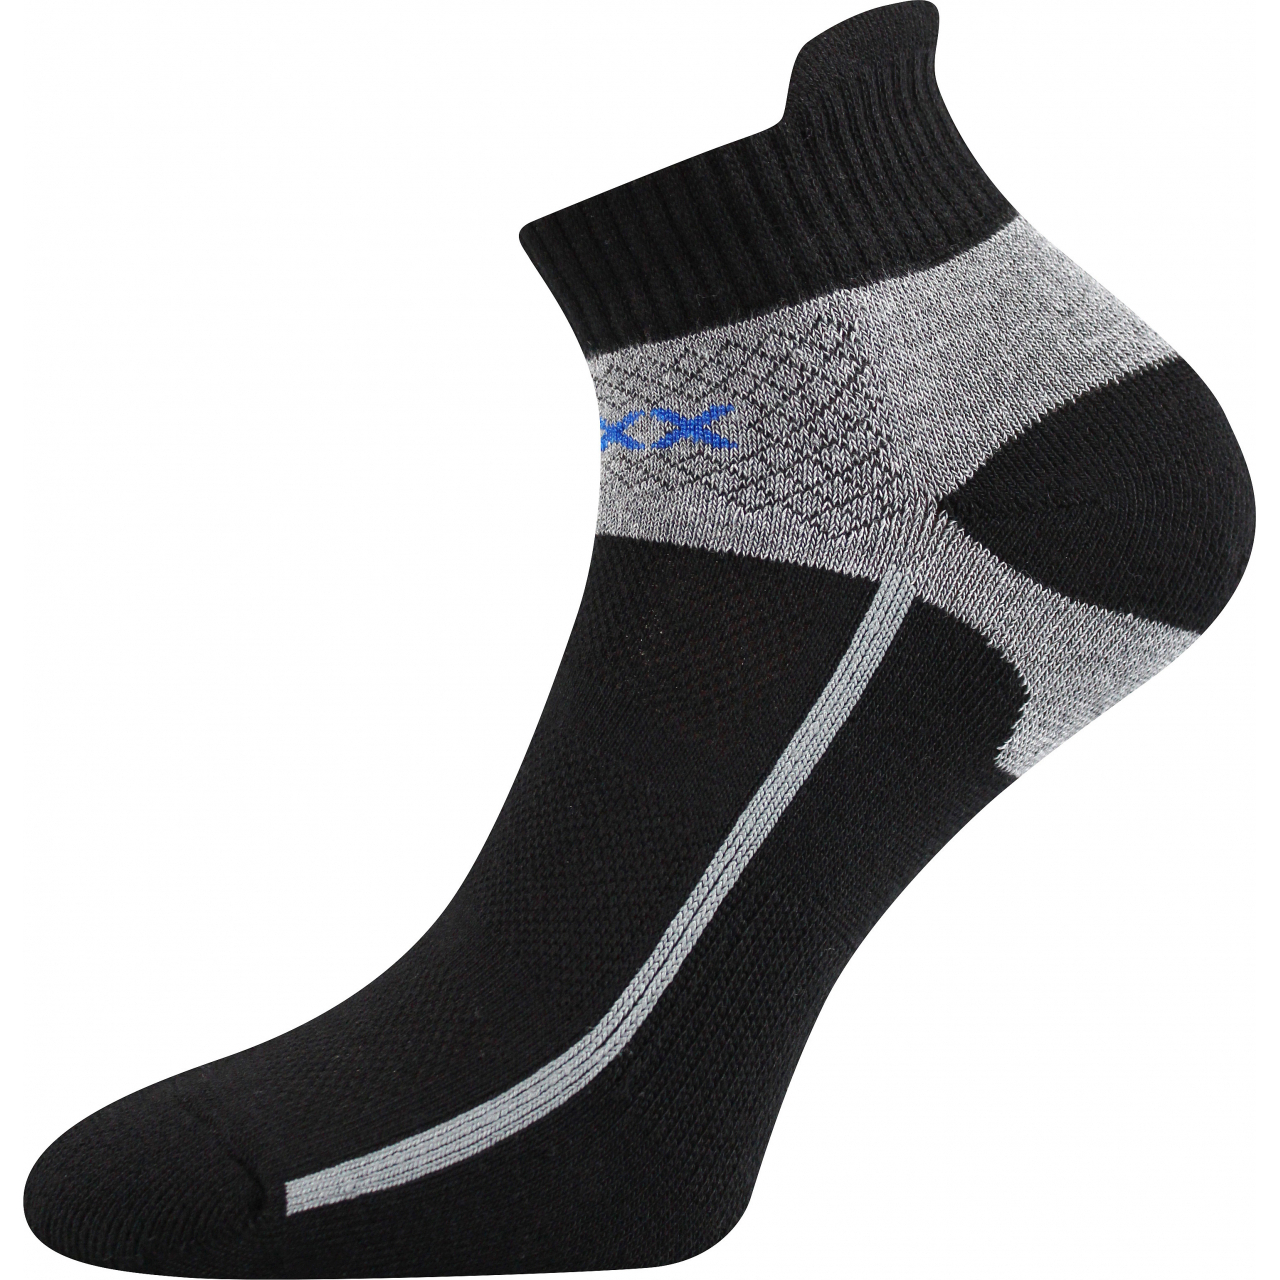 Ponožky sportovní Voxx Glowing - černé-šedé, 43-46